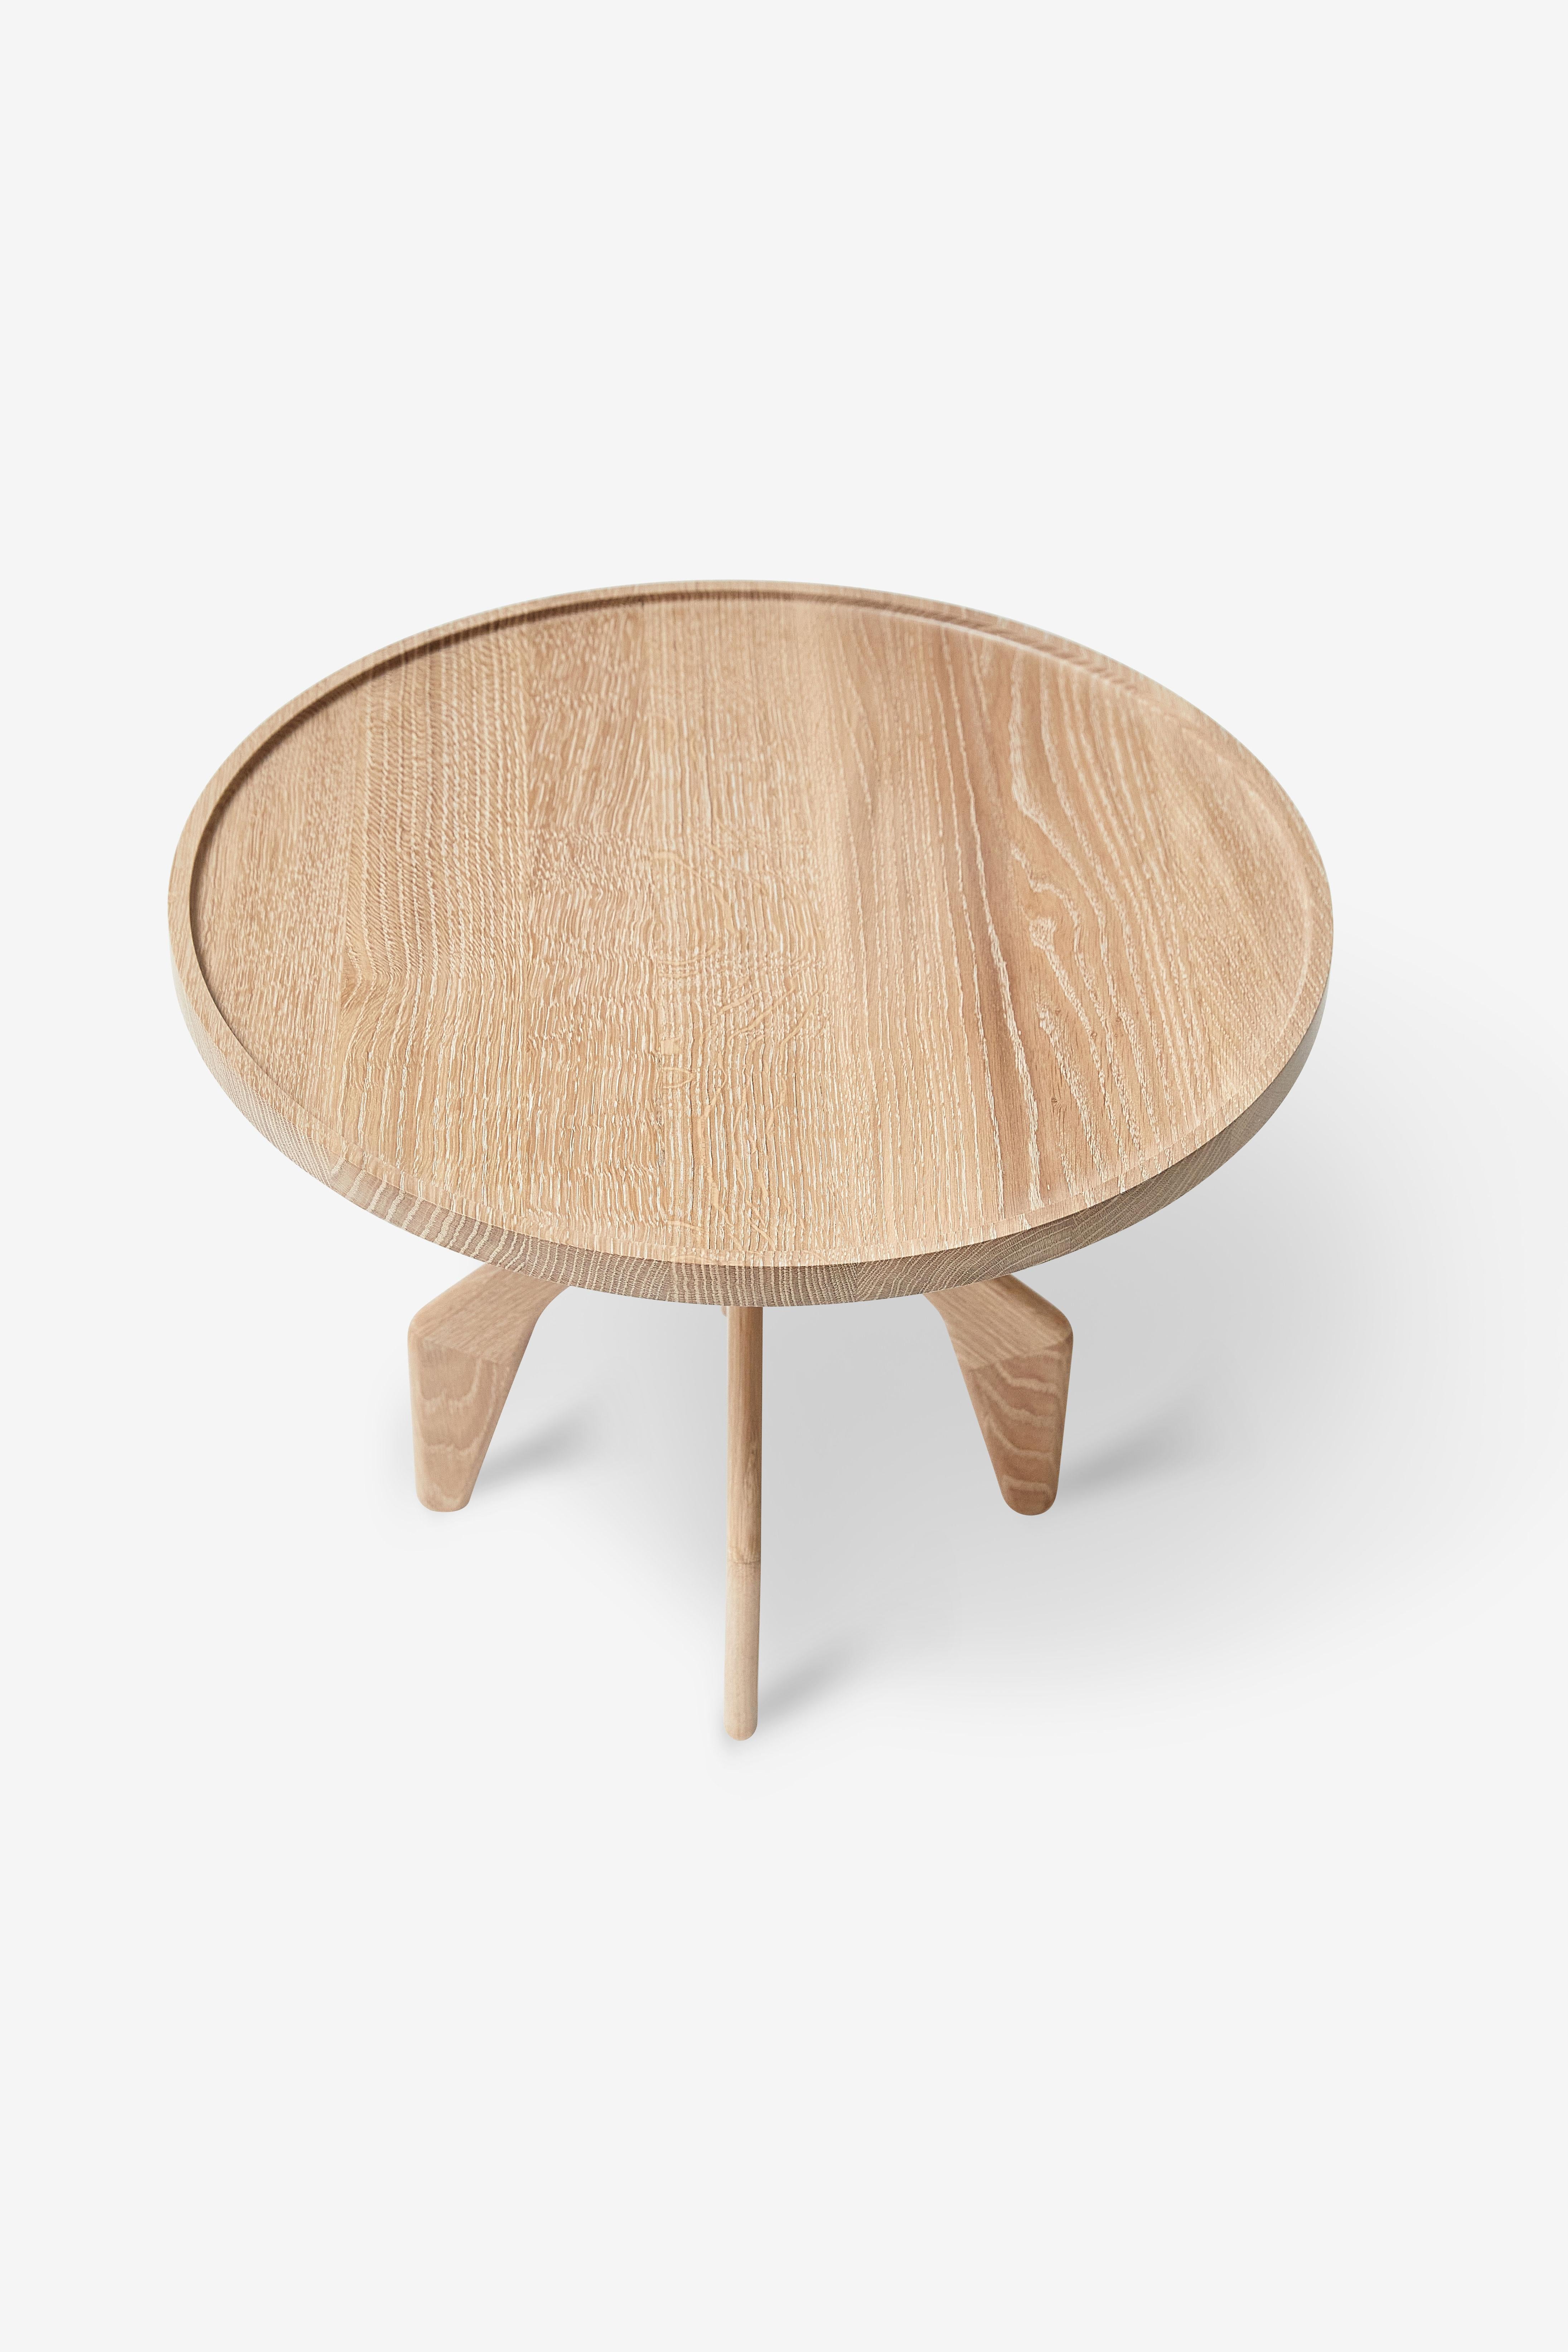 MG205 Table d'appoint en chêne massif. À l'origine, la table a été conçue et fabriquée pour le salon du premier restaurant Noma, situé à Strandgade, à Copenhague.

Issue d'un ensemble d'œuvres réalisées au cours de la dernière décennie entre Malte